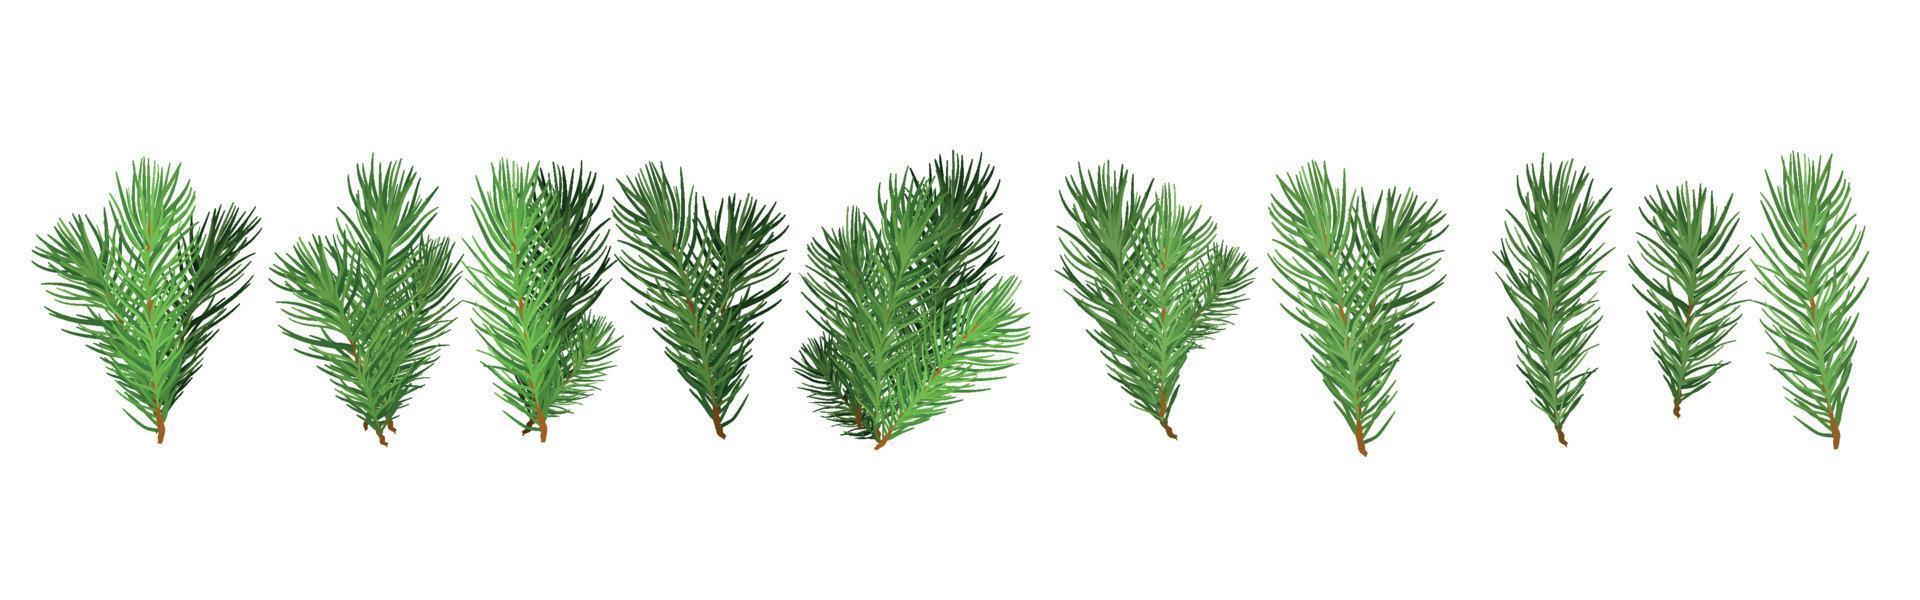 un insieme di rami verdi dell'albero di natale per un arredamento natalizio. rami di abete, pino isolato. vettore